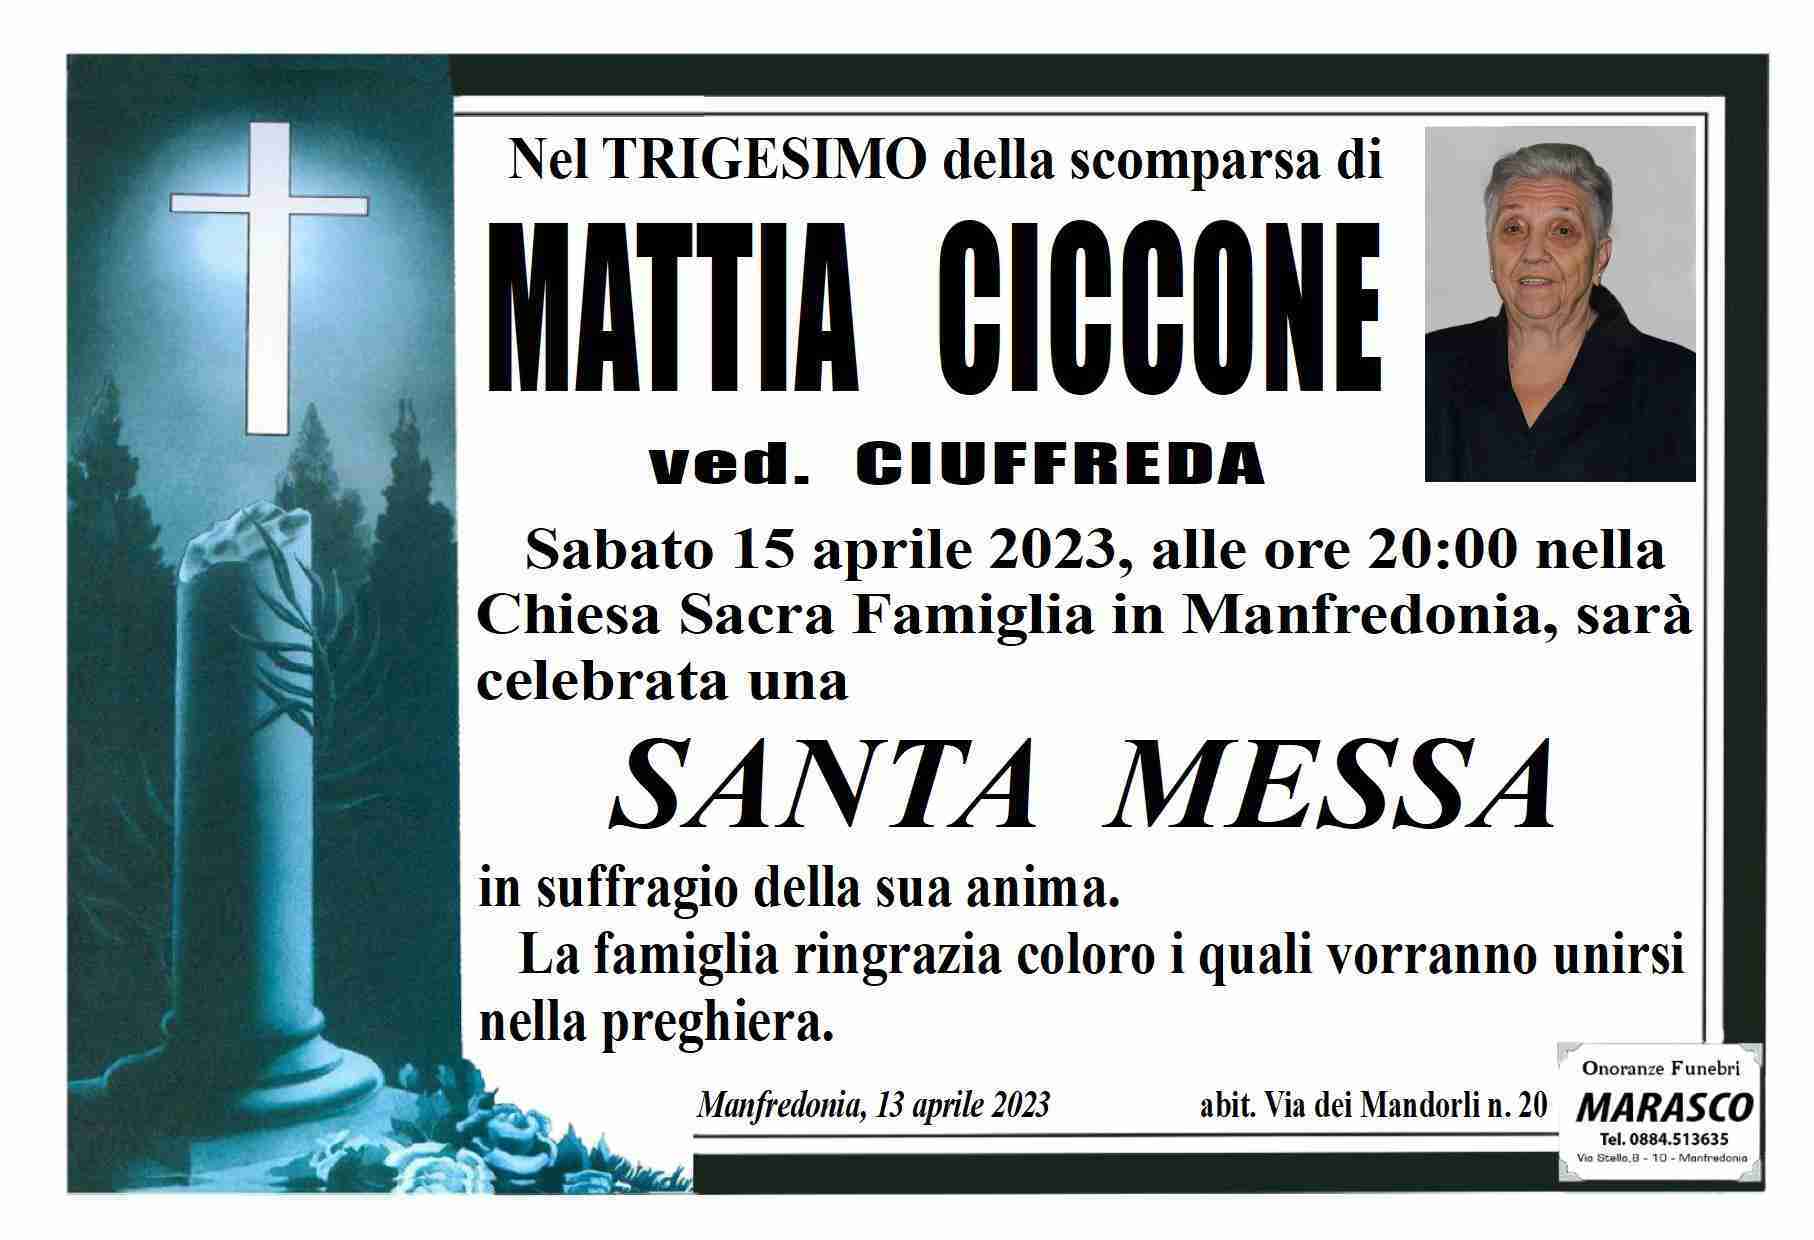 Mattia Ciccone